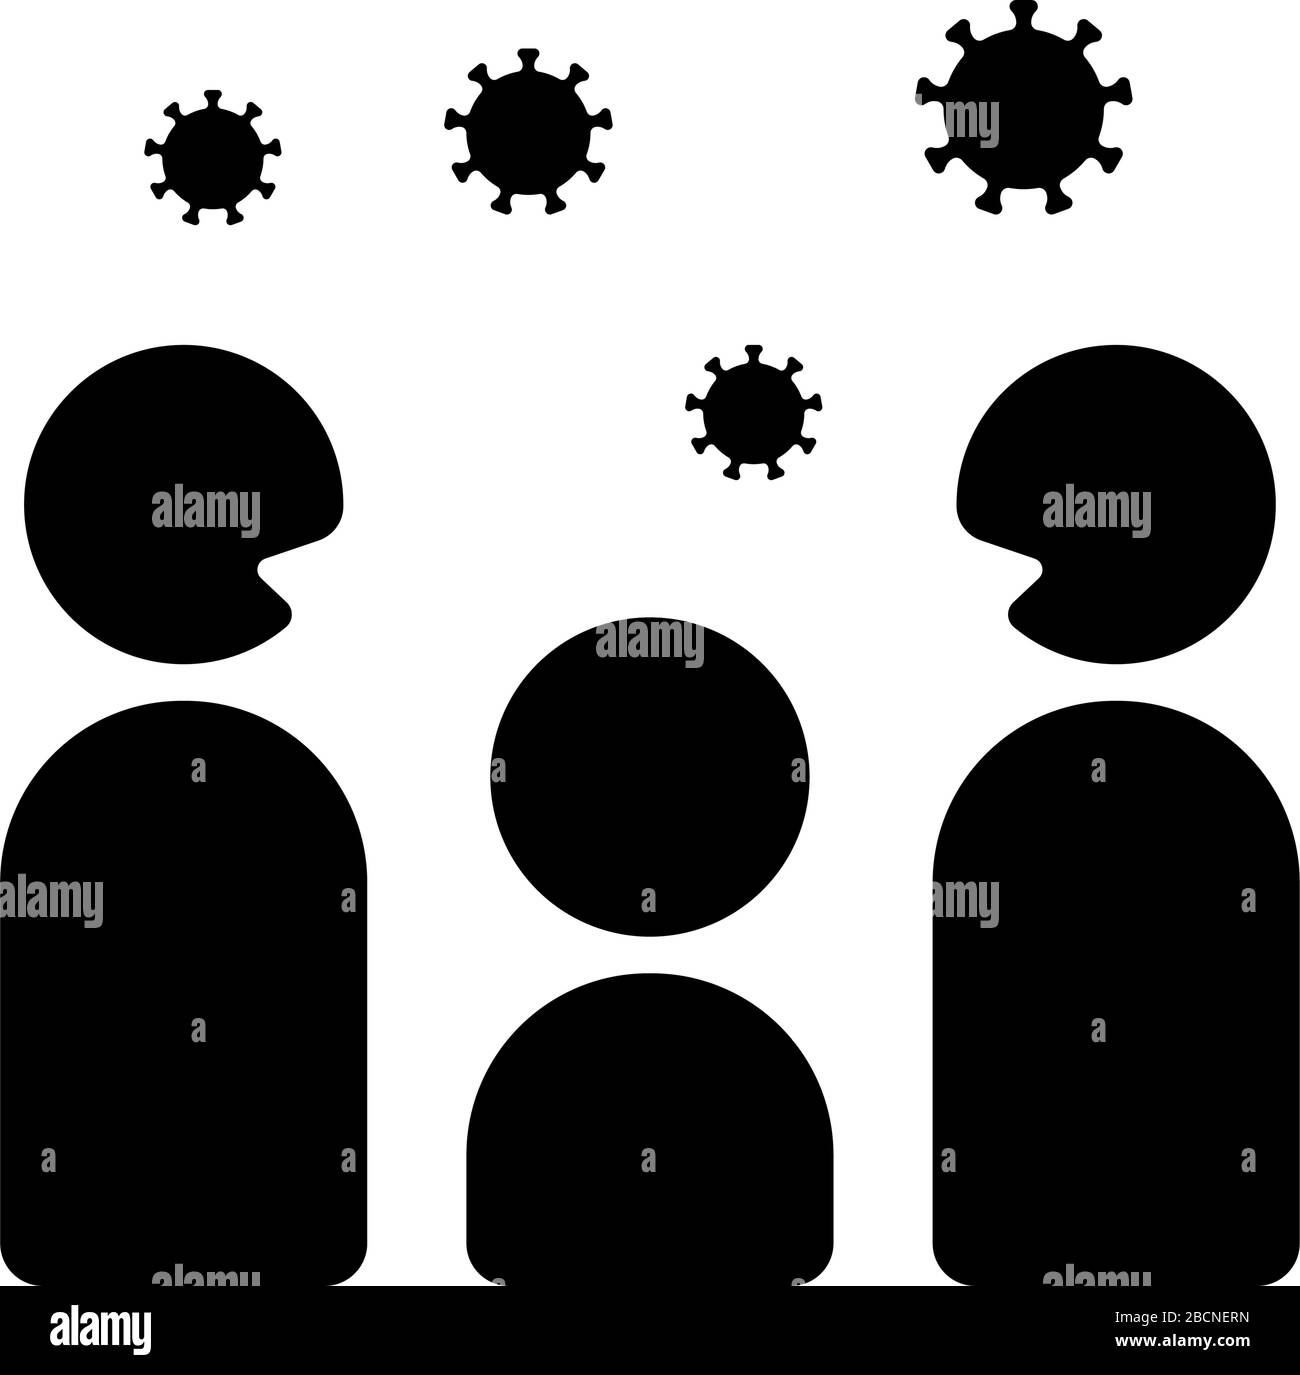 Allontanamento sociale (Corona virus / covid-19 / influenza / influenza ) immagine icona del vettore Illustrazione Vettoriale